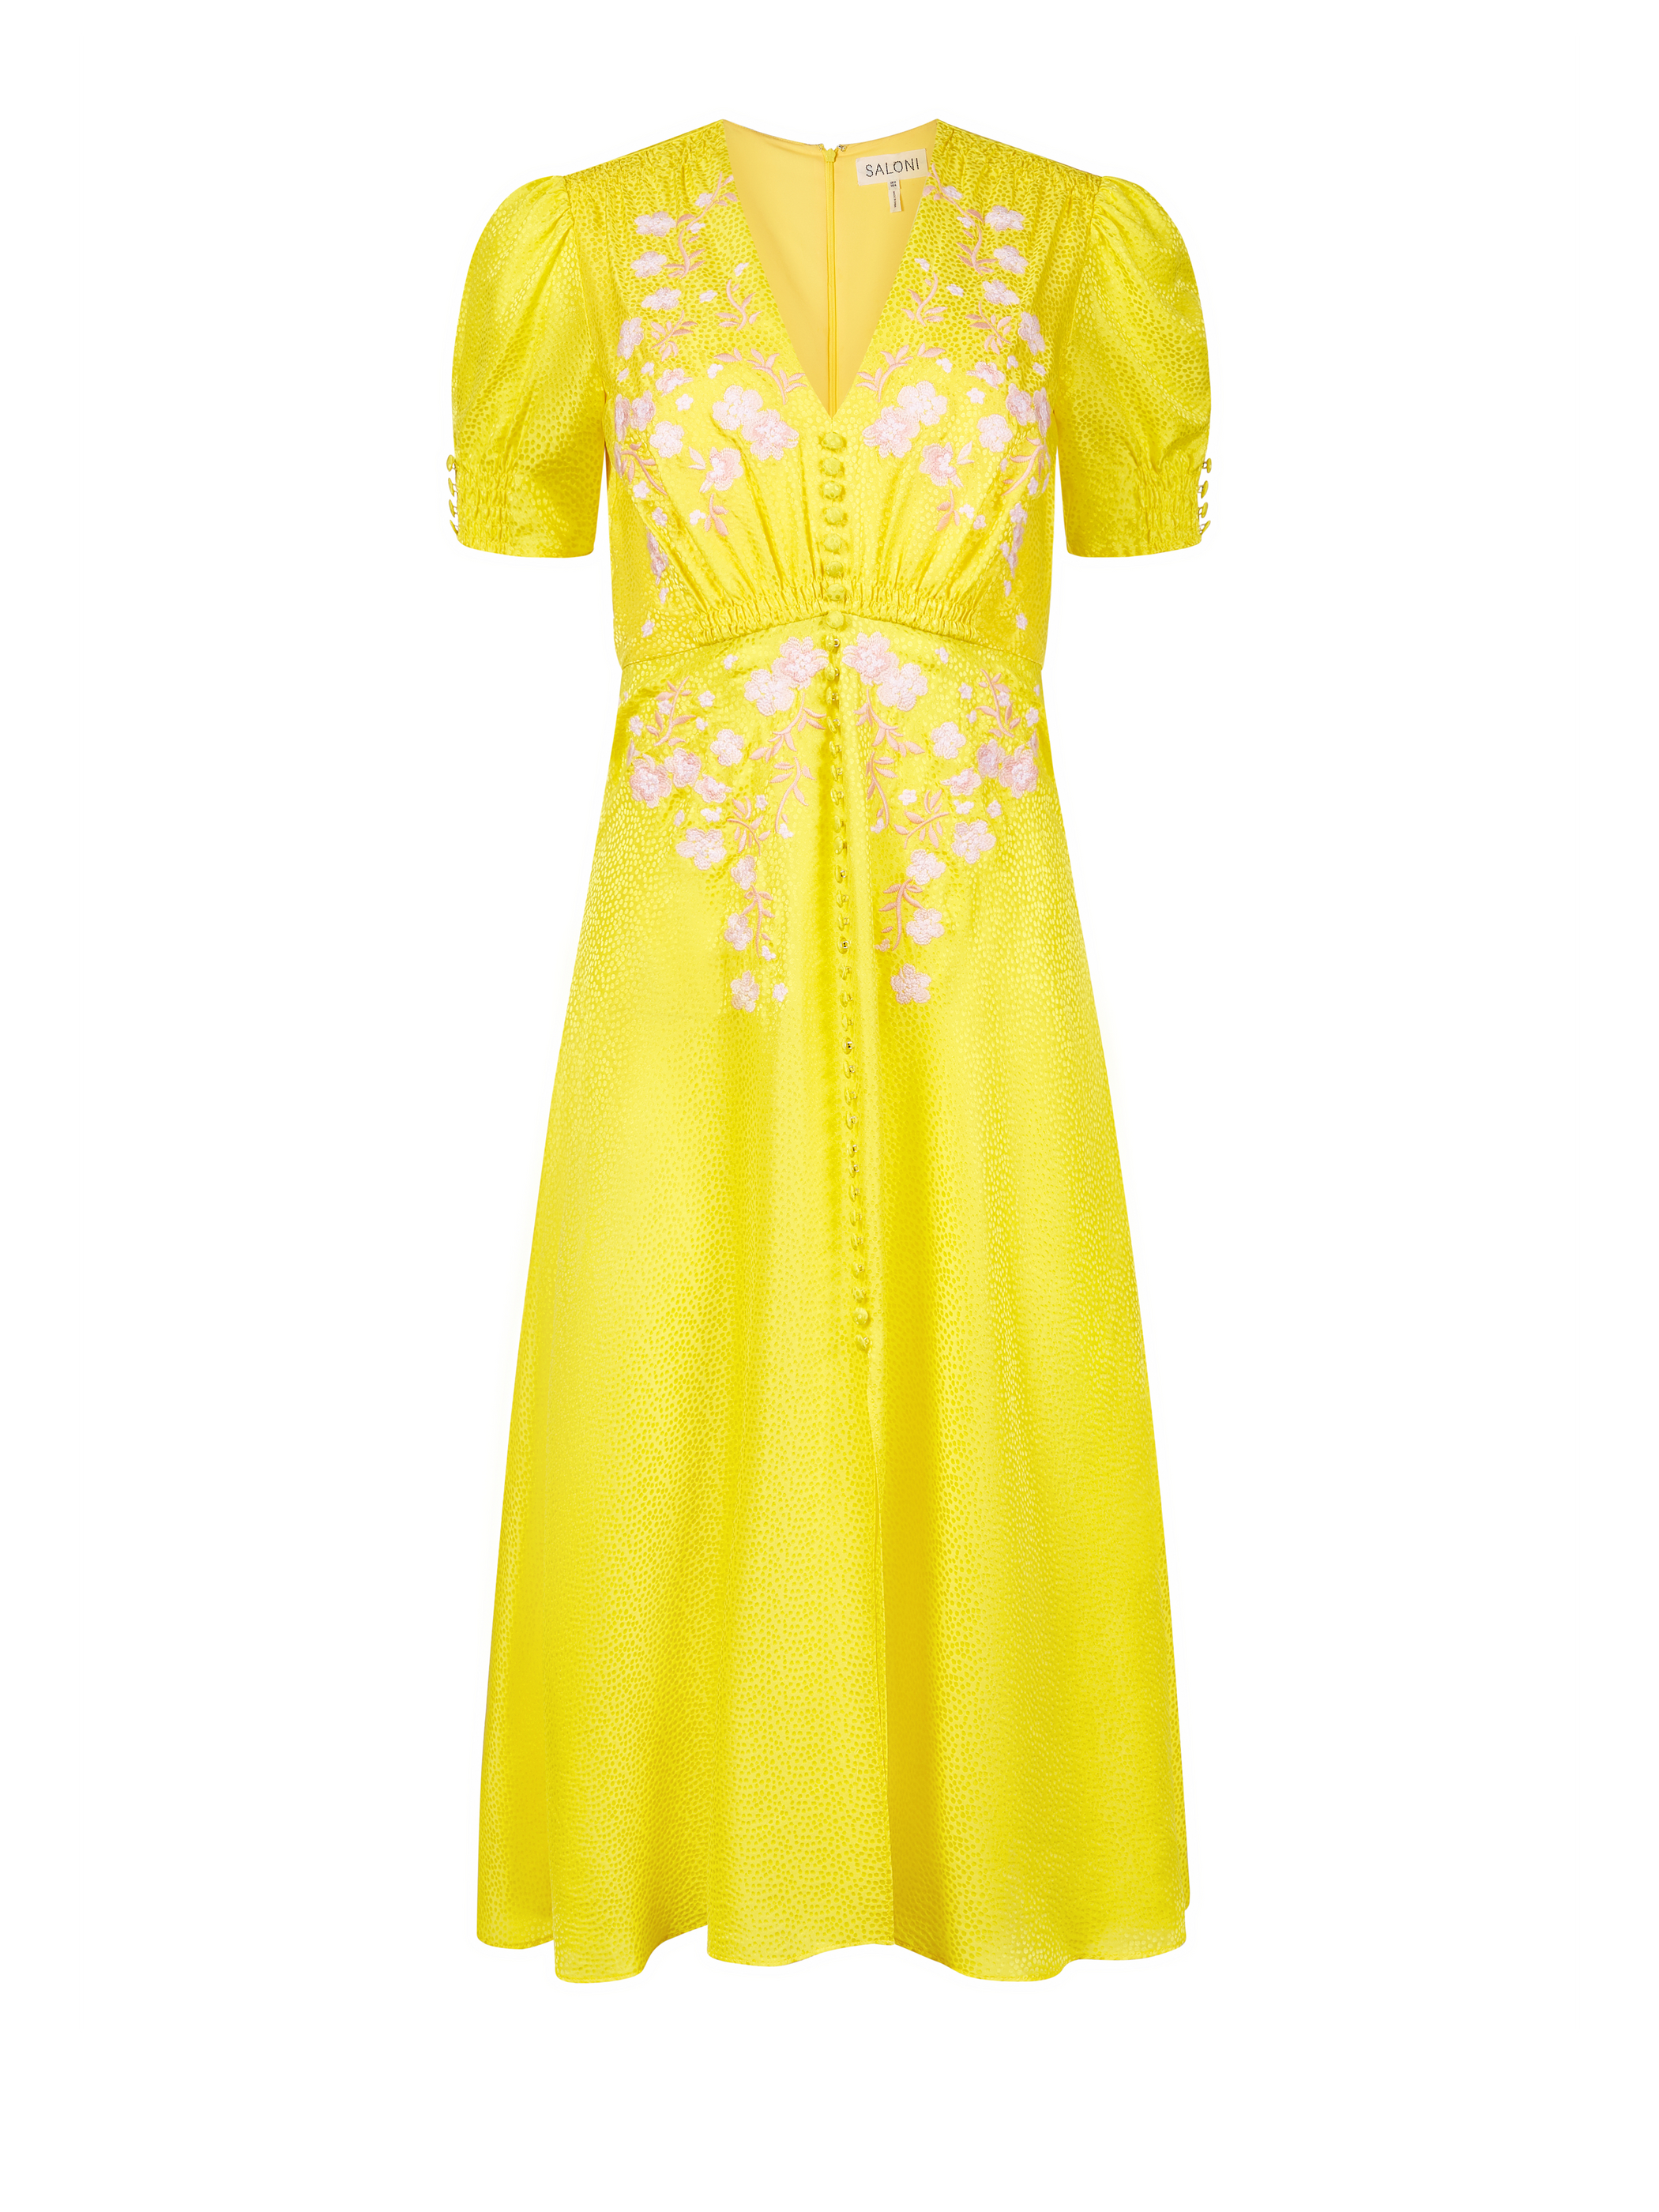 Lea Dress in Bright Lemon